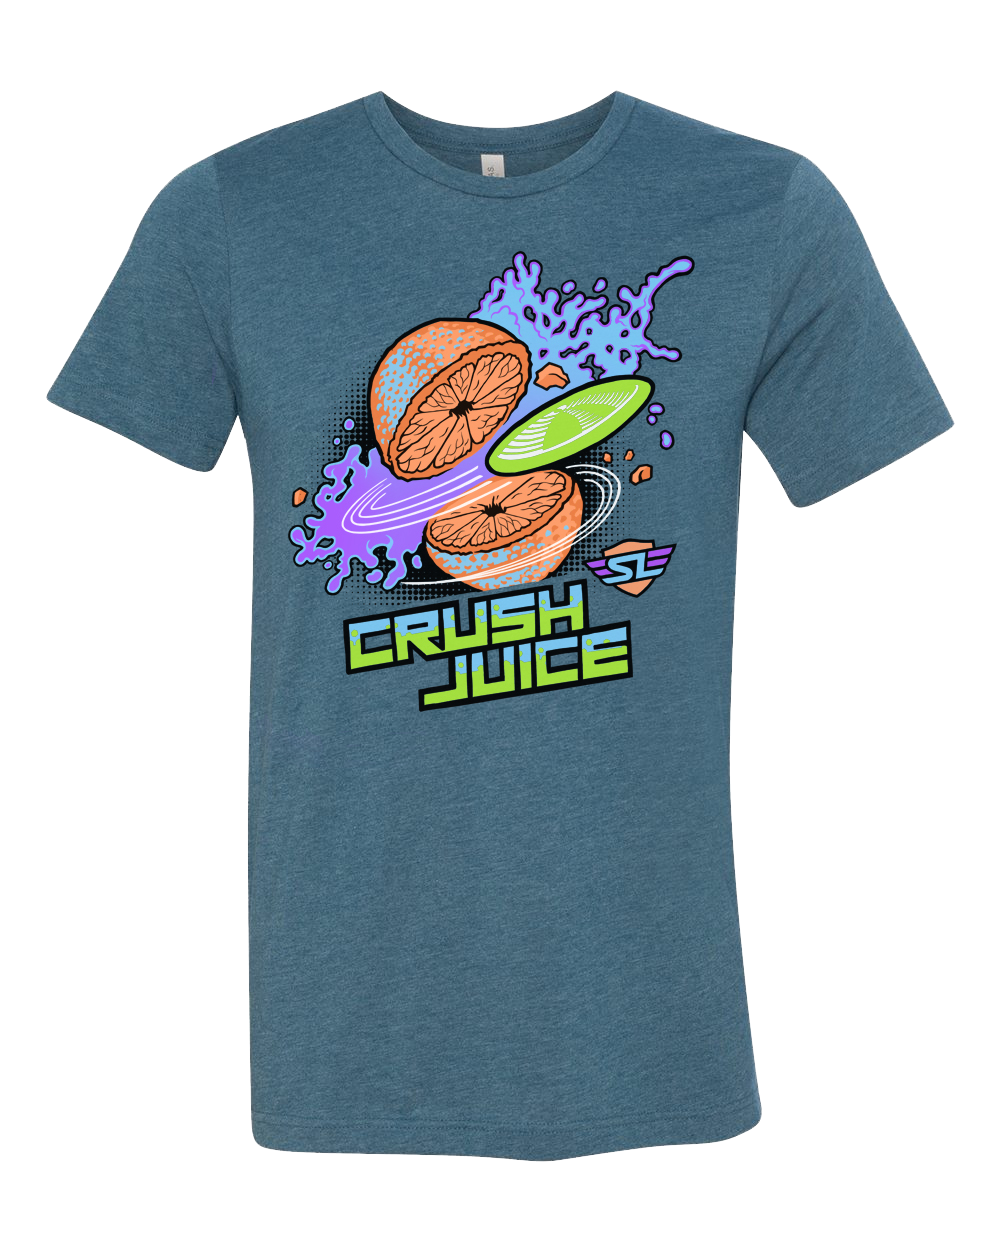 Crush juice shirt